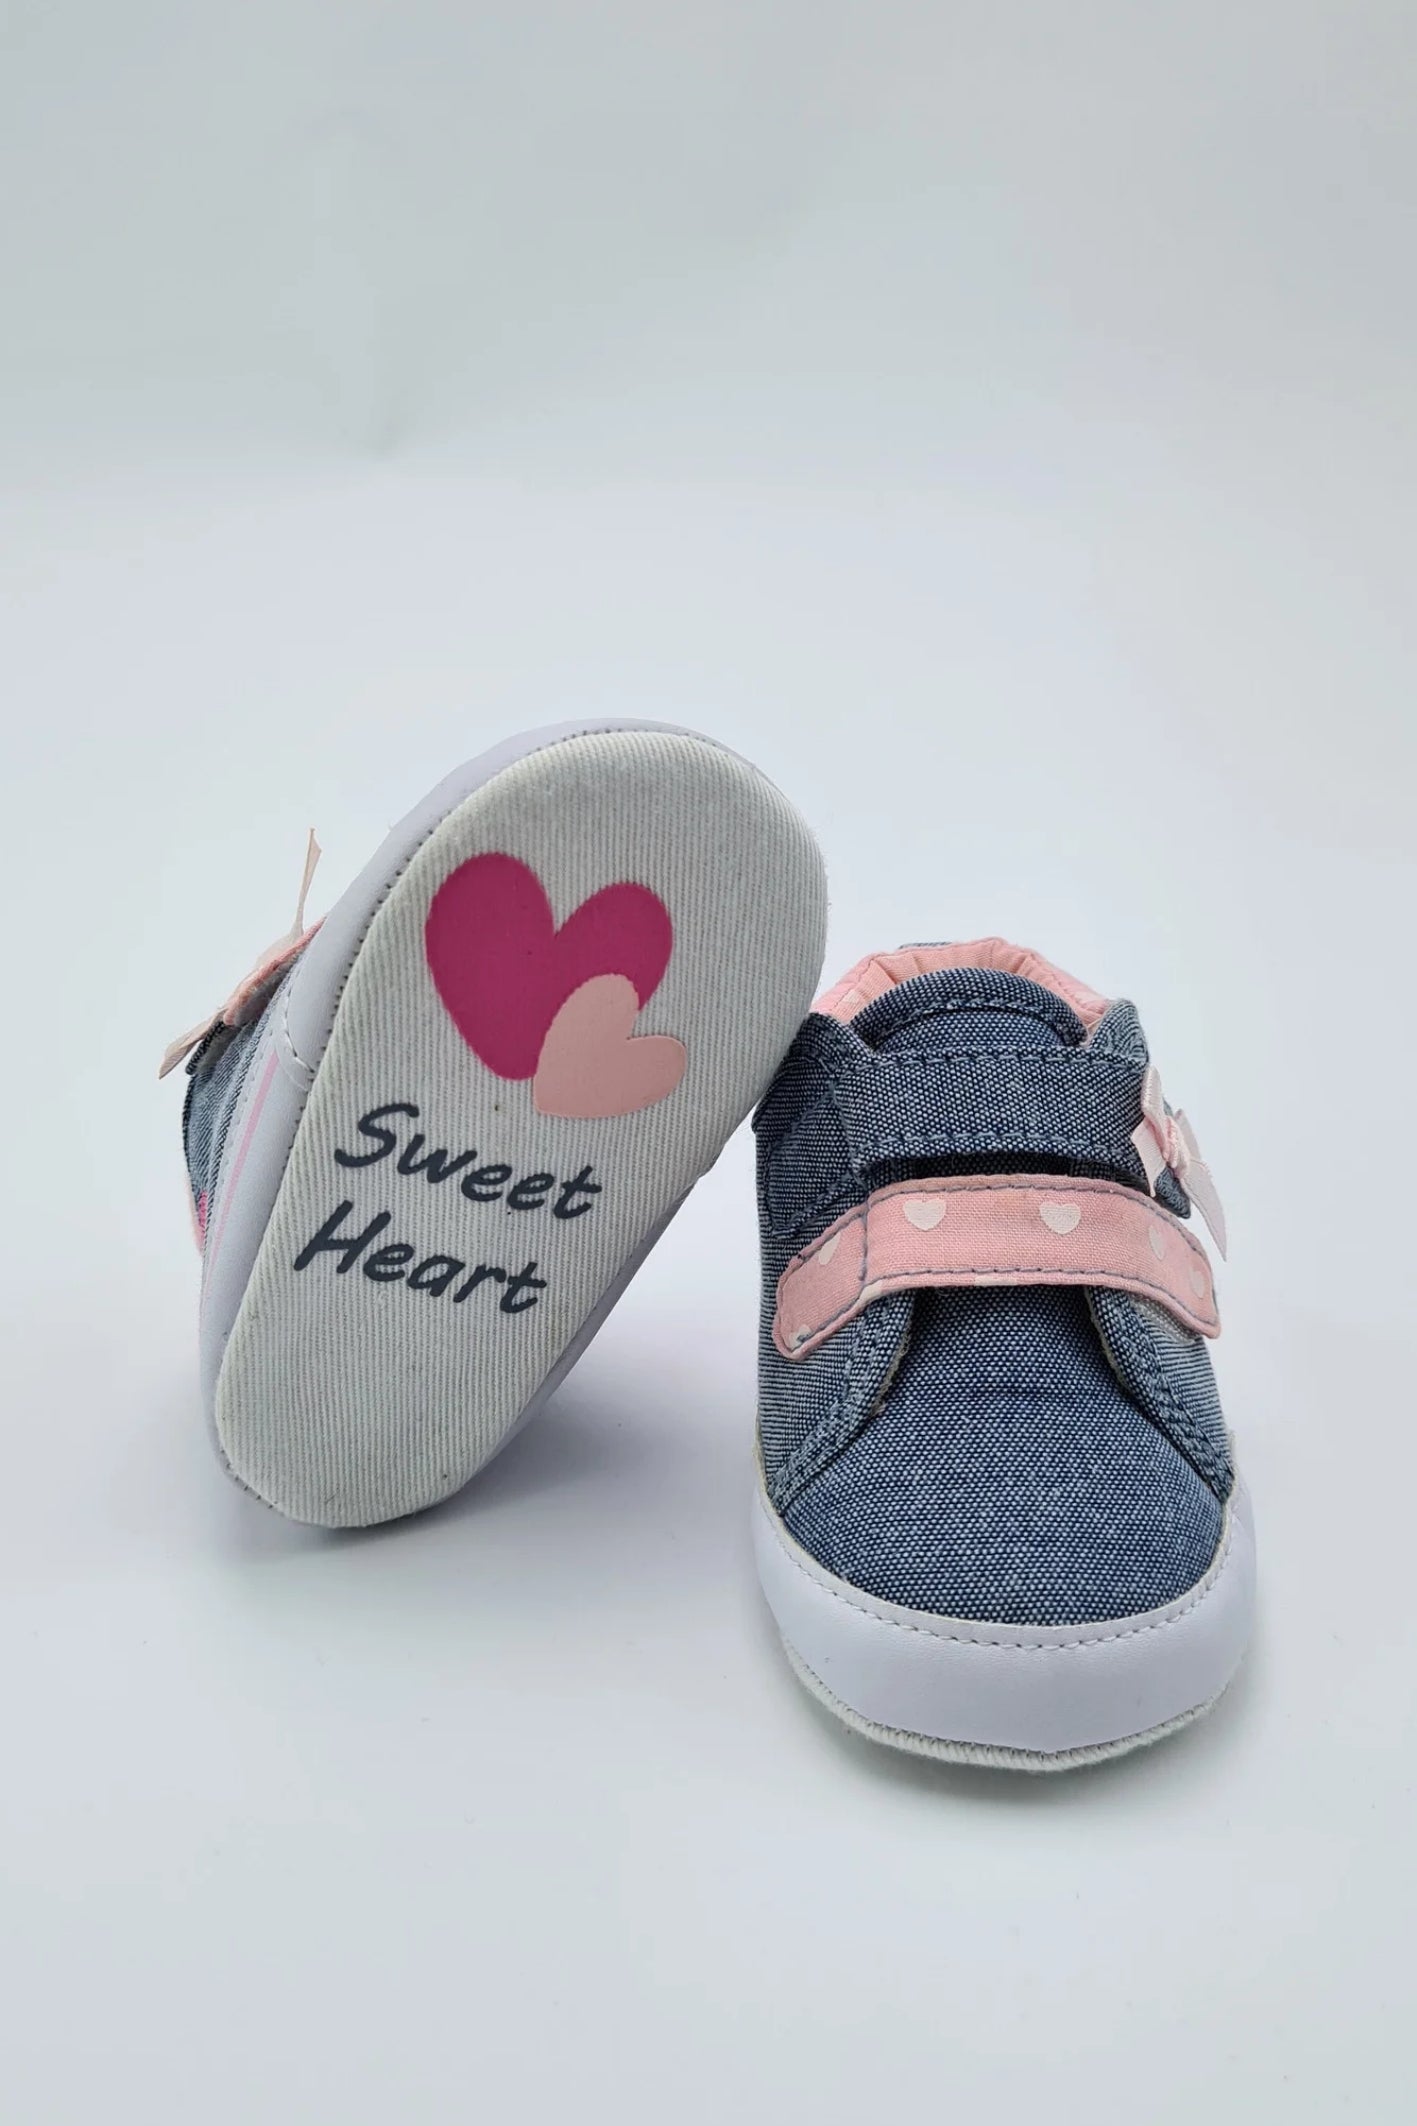 0-3 mois - Chaussures Crin pour bébé